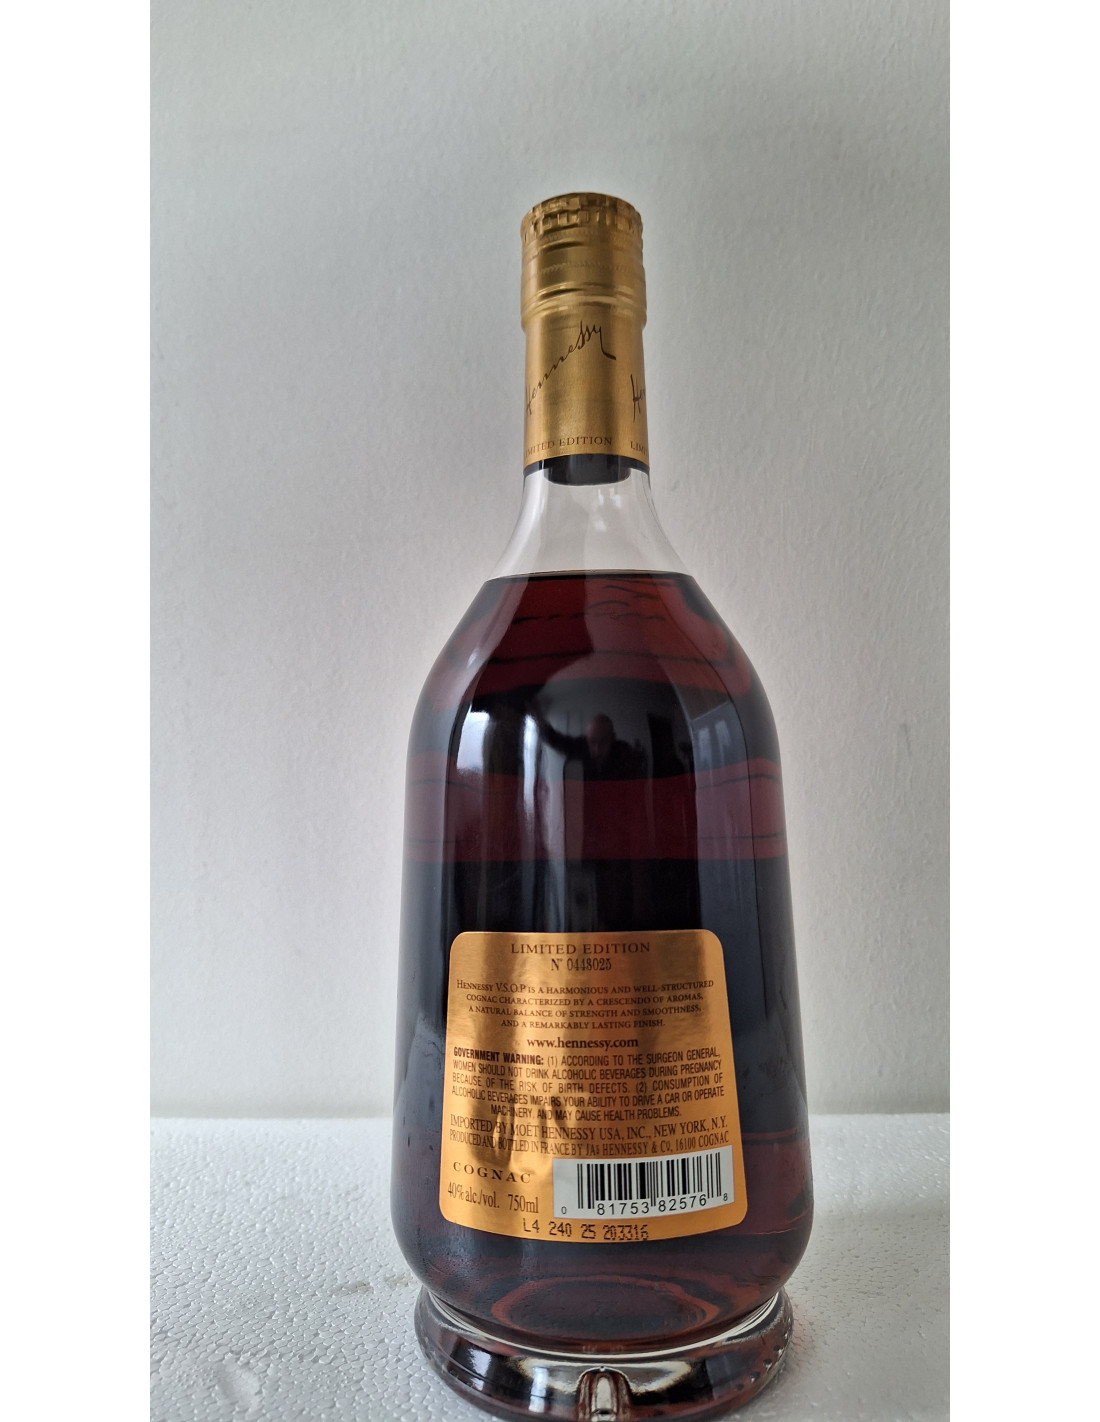 Hennessy Cognac Vsop France 750ml